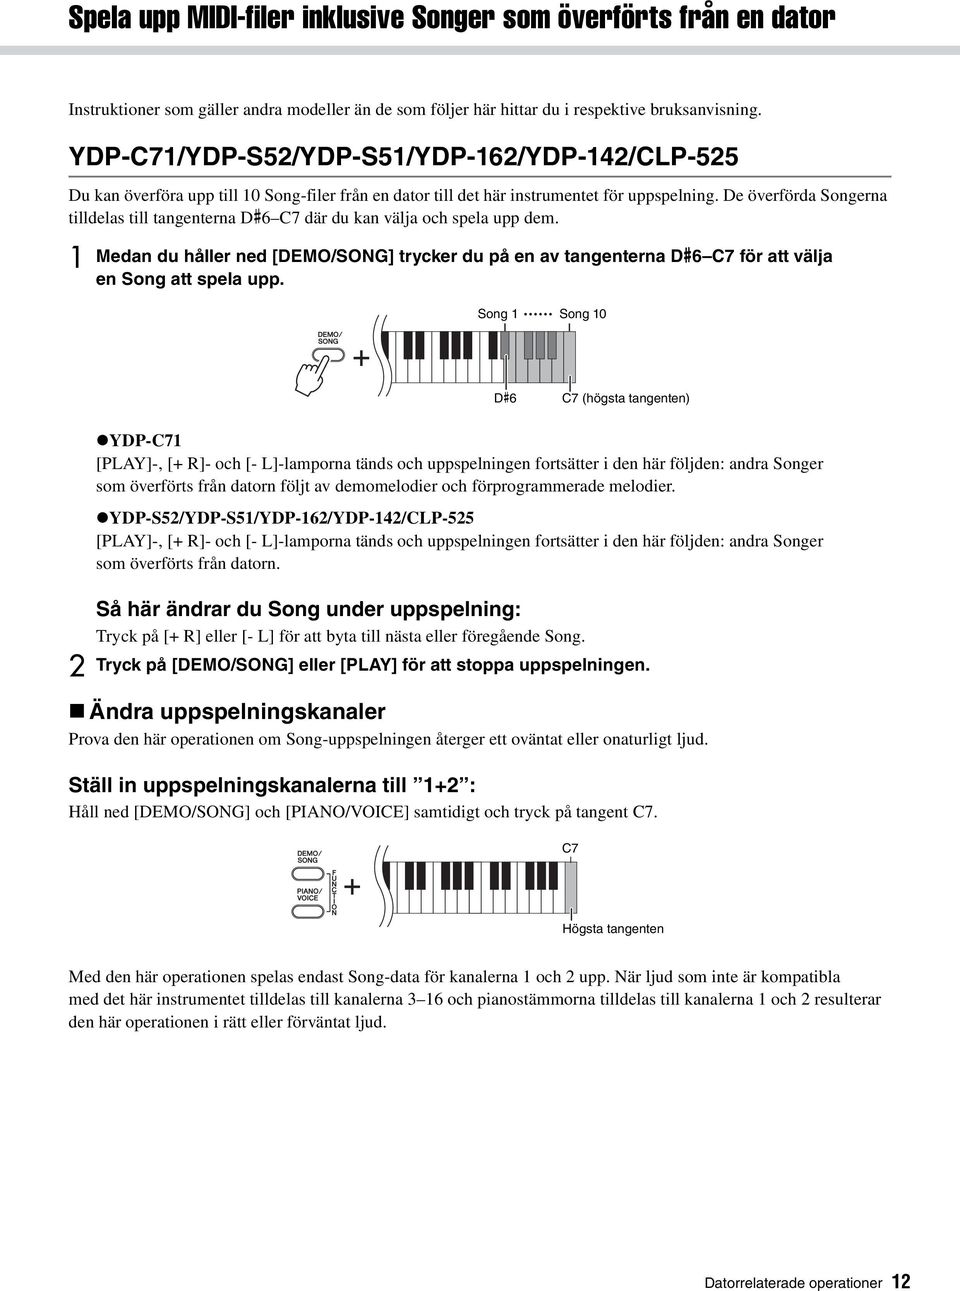 De överförda Songerna tilldelas till tangenterna D#6C7 där du kan välja och spela upp dem. 1 Medan du håller ned [DEMO/SONG] trycker du på en av tangenterna D#6C7 för att välja en Song att spela upp.